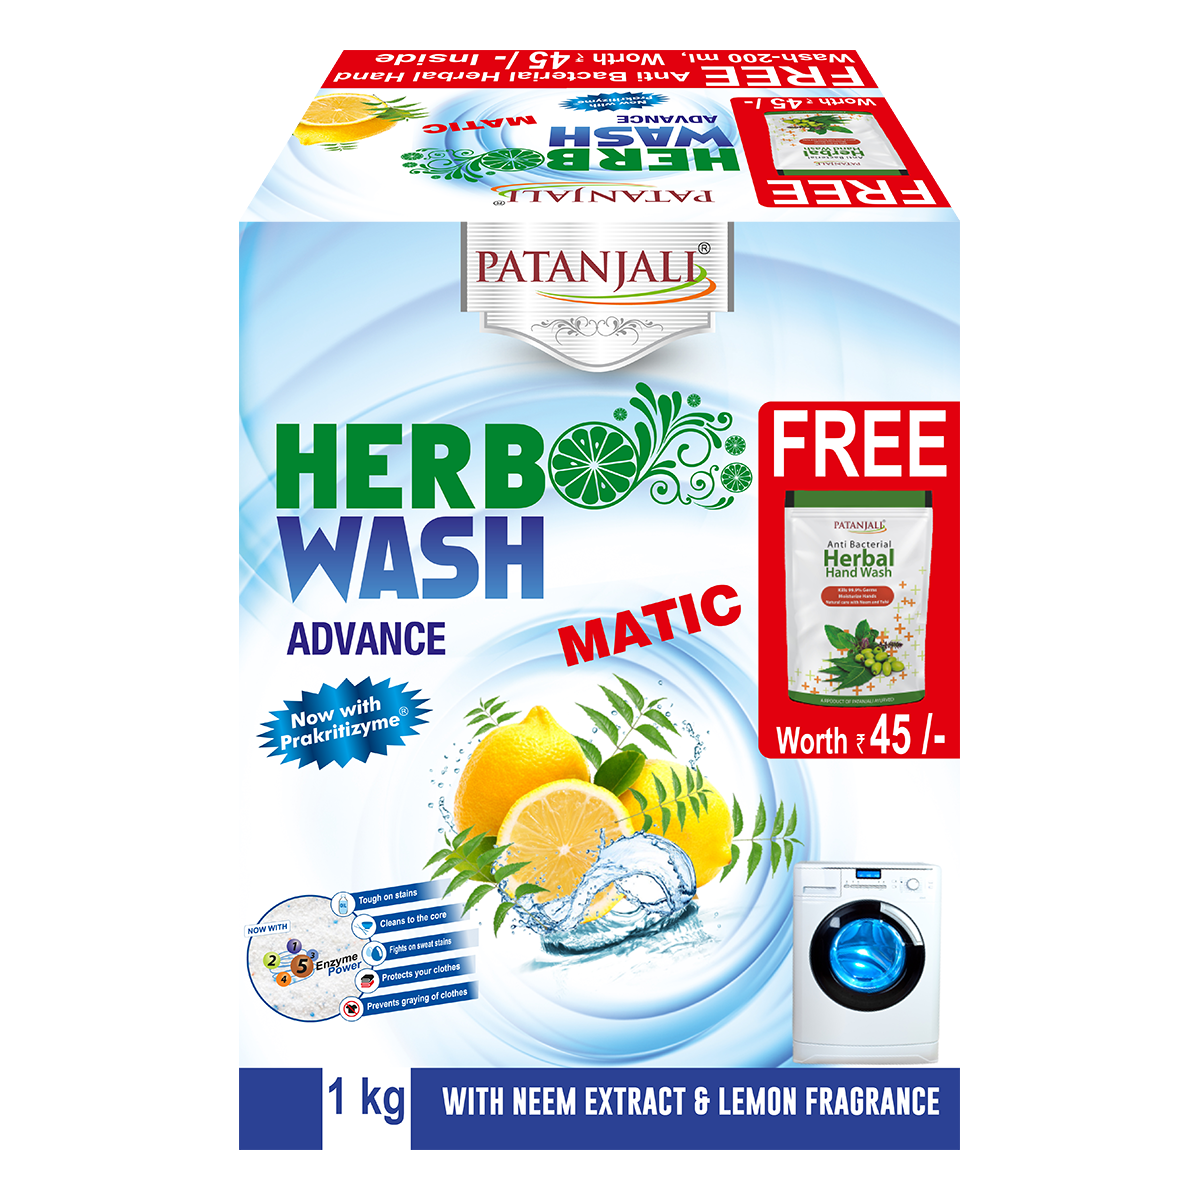 Herbo Wash Advance Matic Detergent Powder With Free Handwash